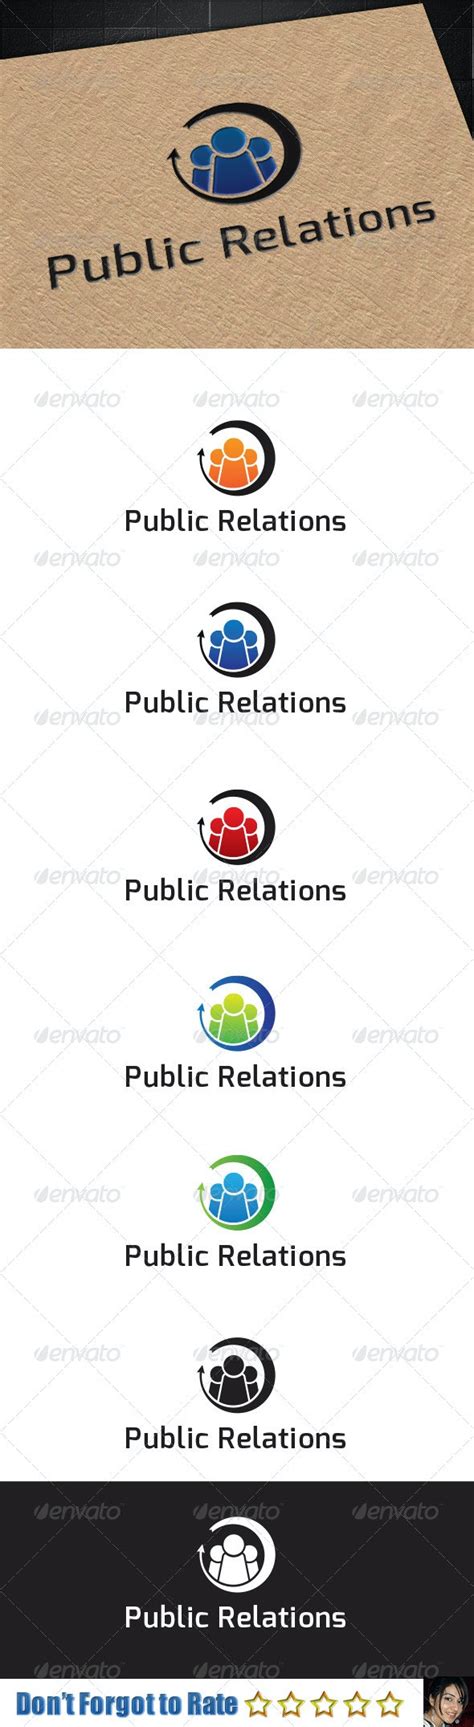 public relations logo  sajidagd graphicriver